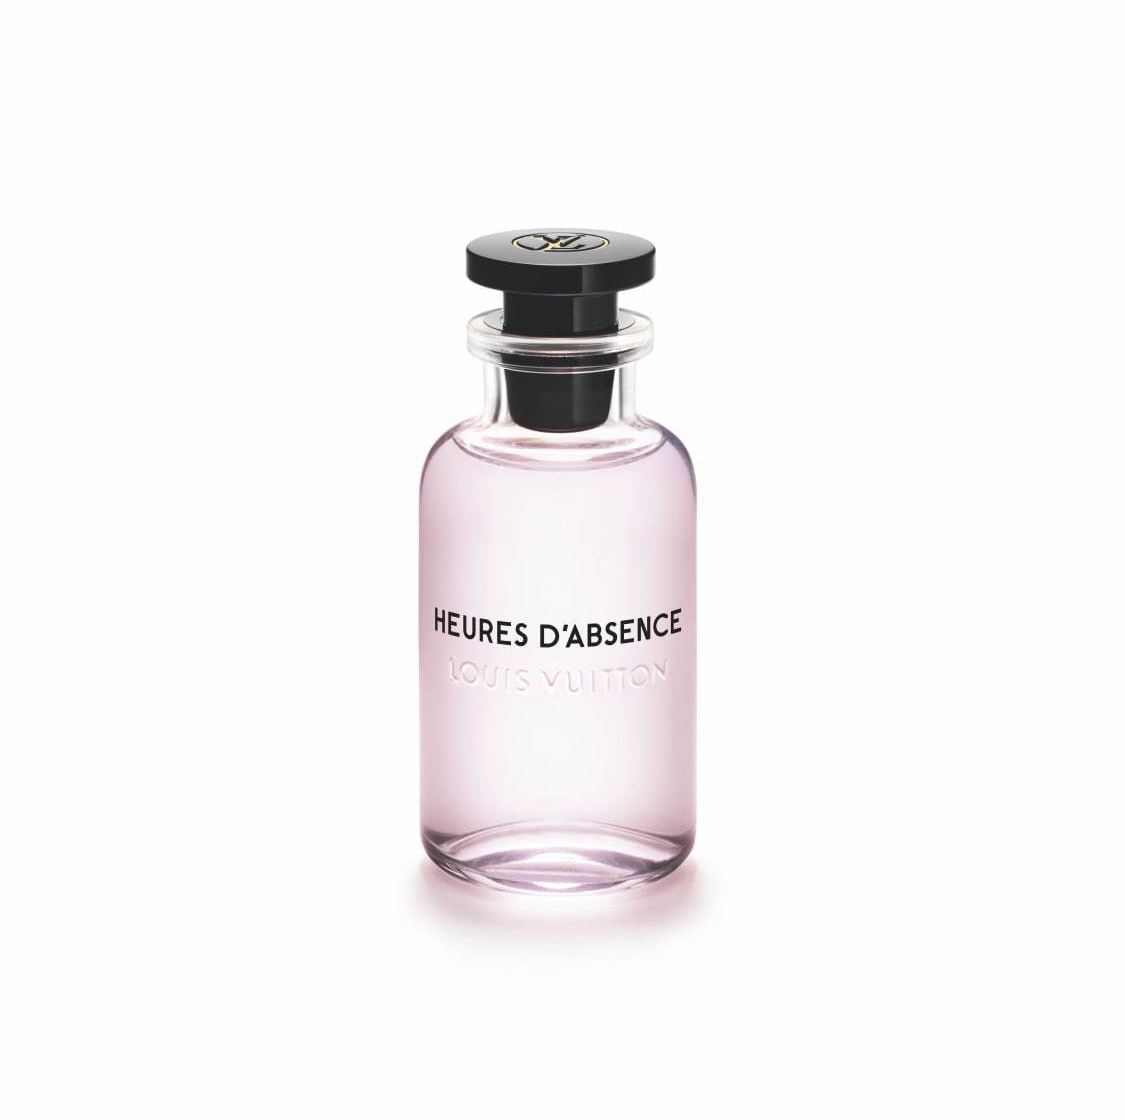 Heures d'Absence Louis Vuitton аромат — новый аромат для женщин 2020